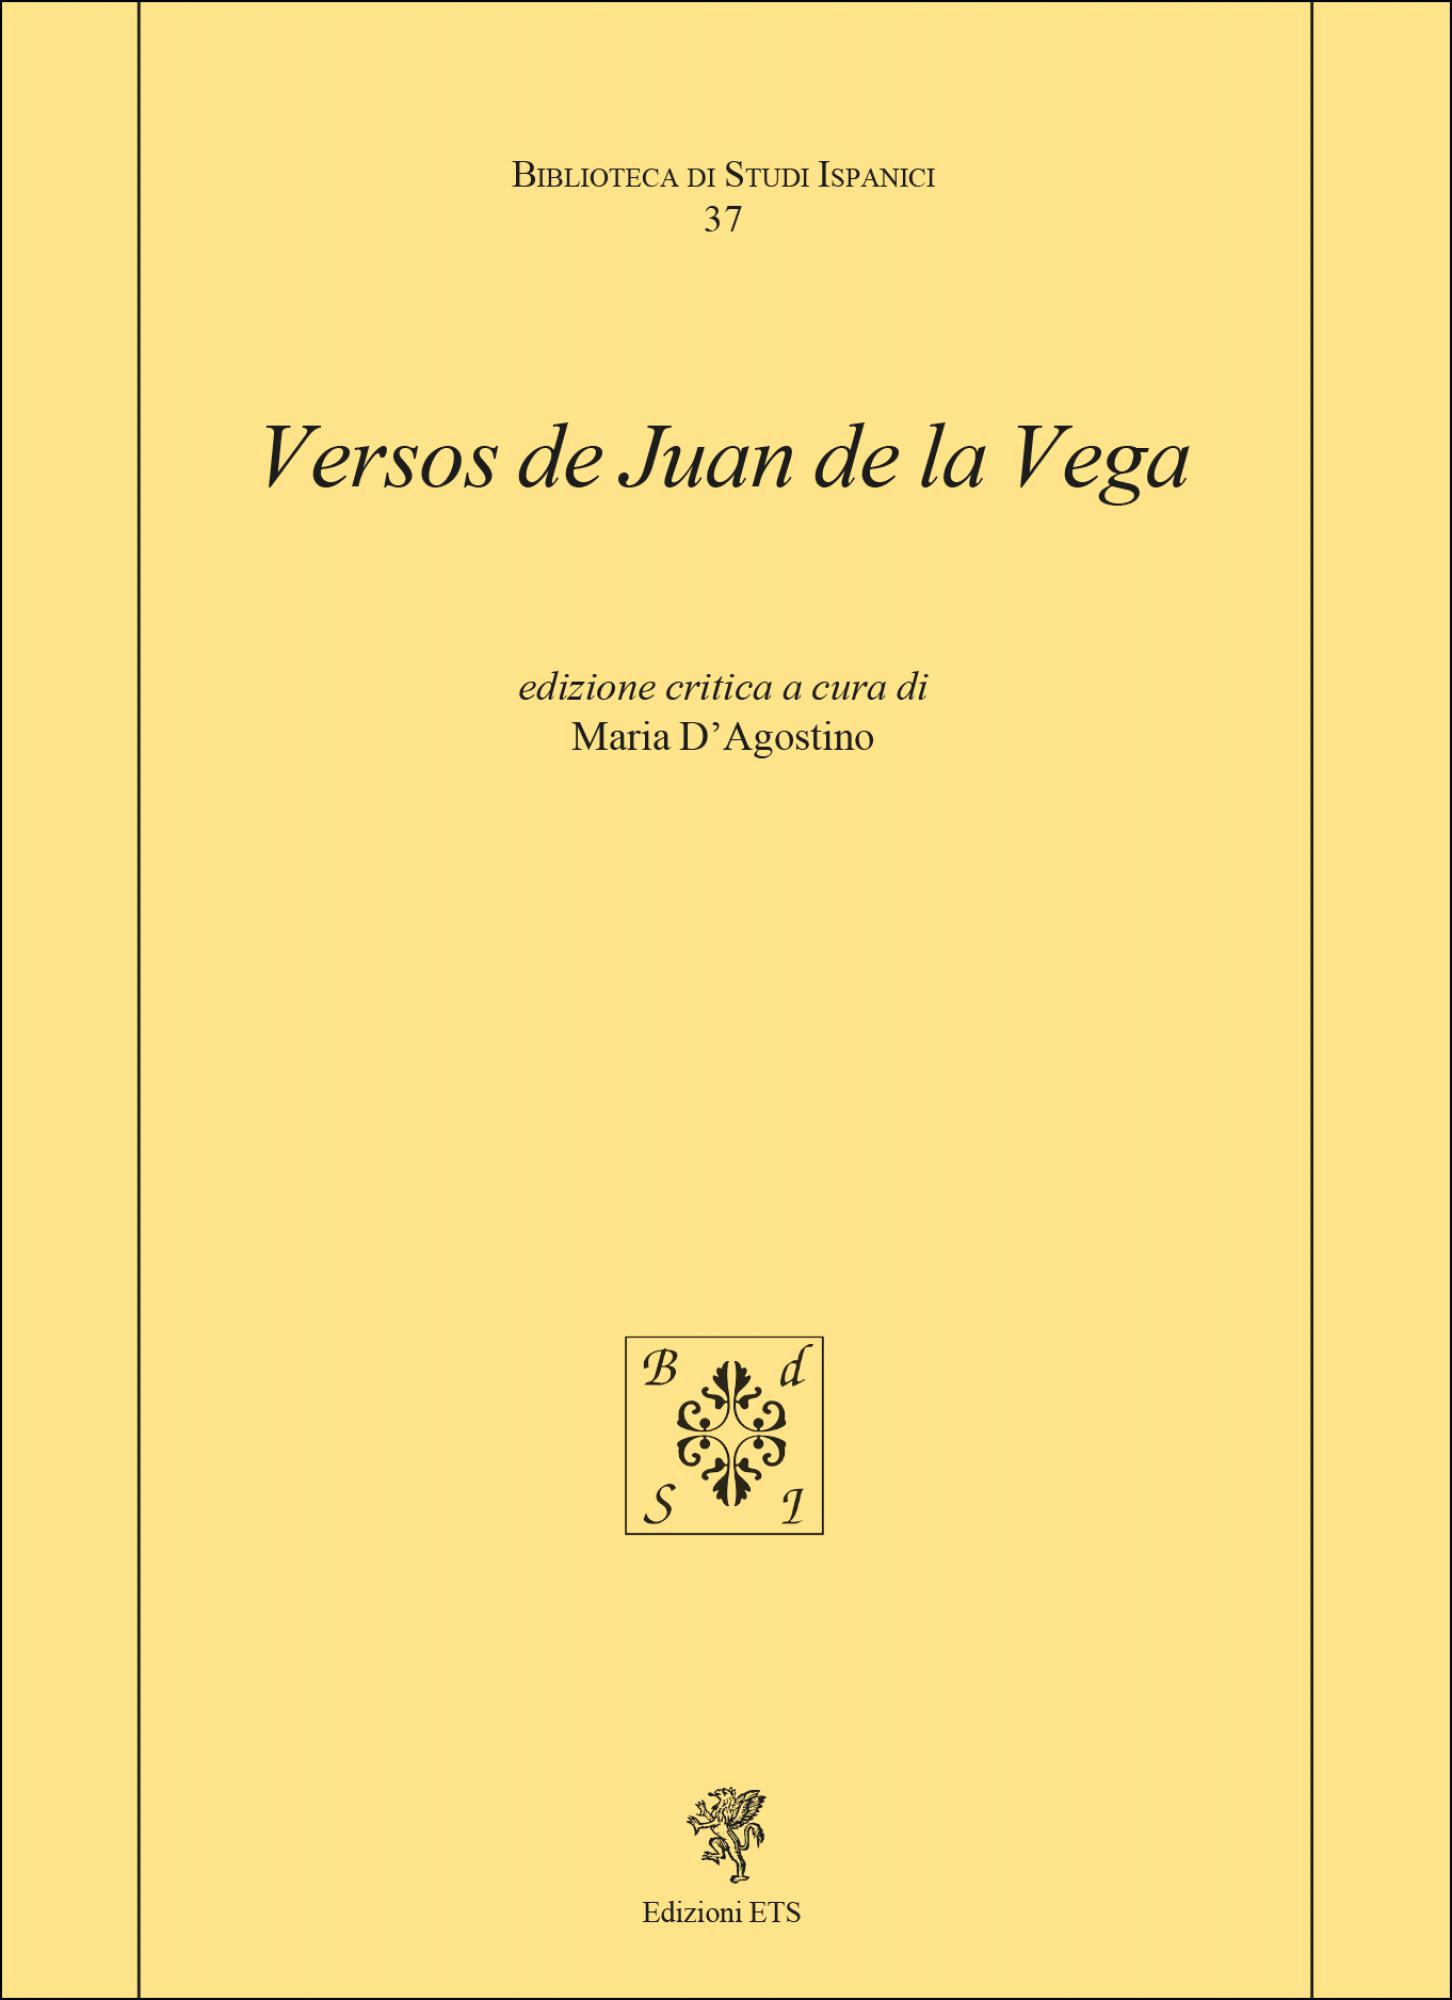 <span>Versos de Juan de la Vega</span>